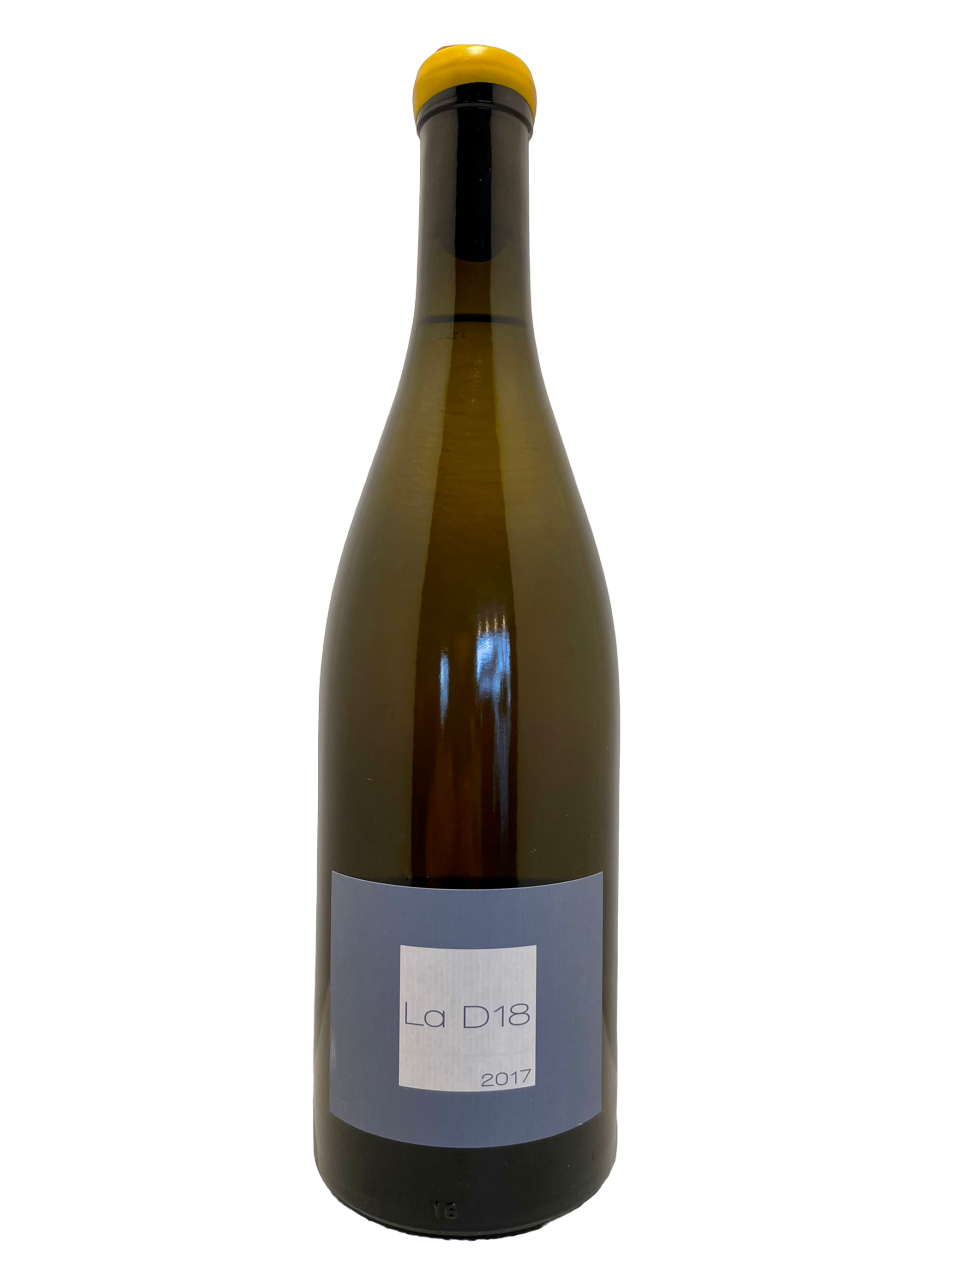 Lnaguedoc roussillon domaine olivier pithon vin biodynamie organic wine igp côtes catalanes La D18 blanc